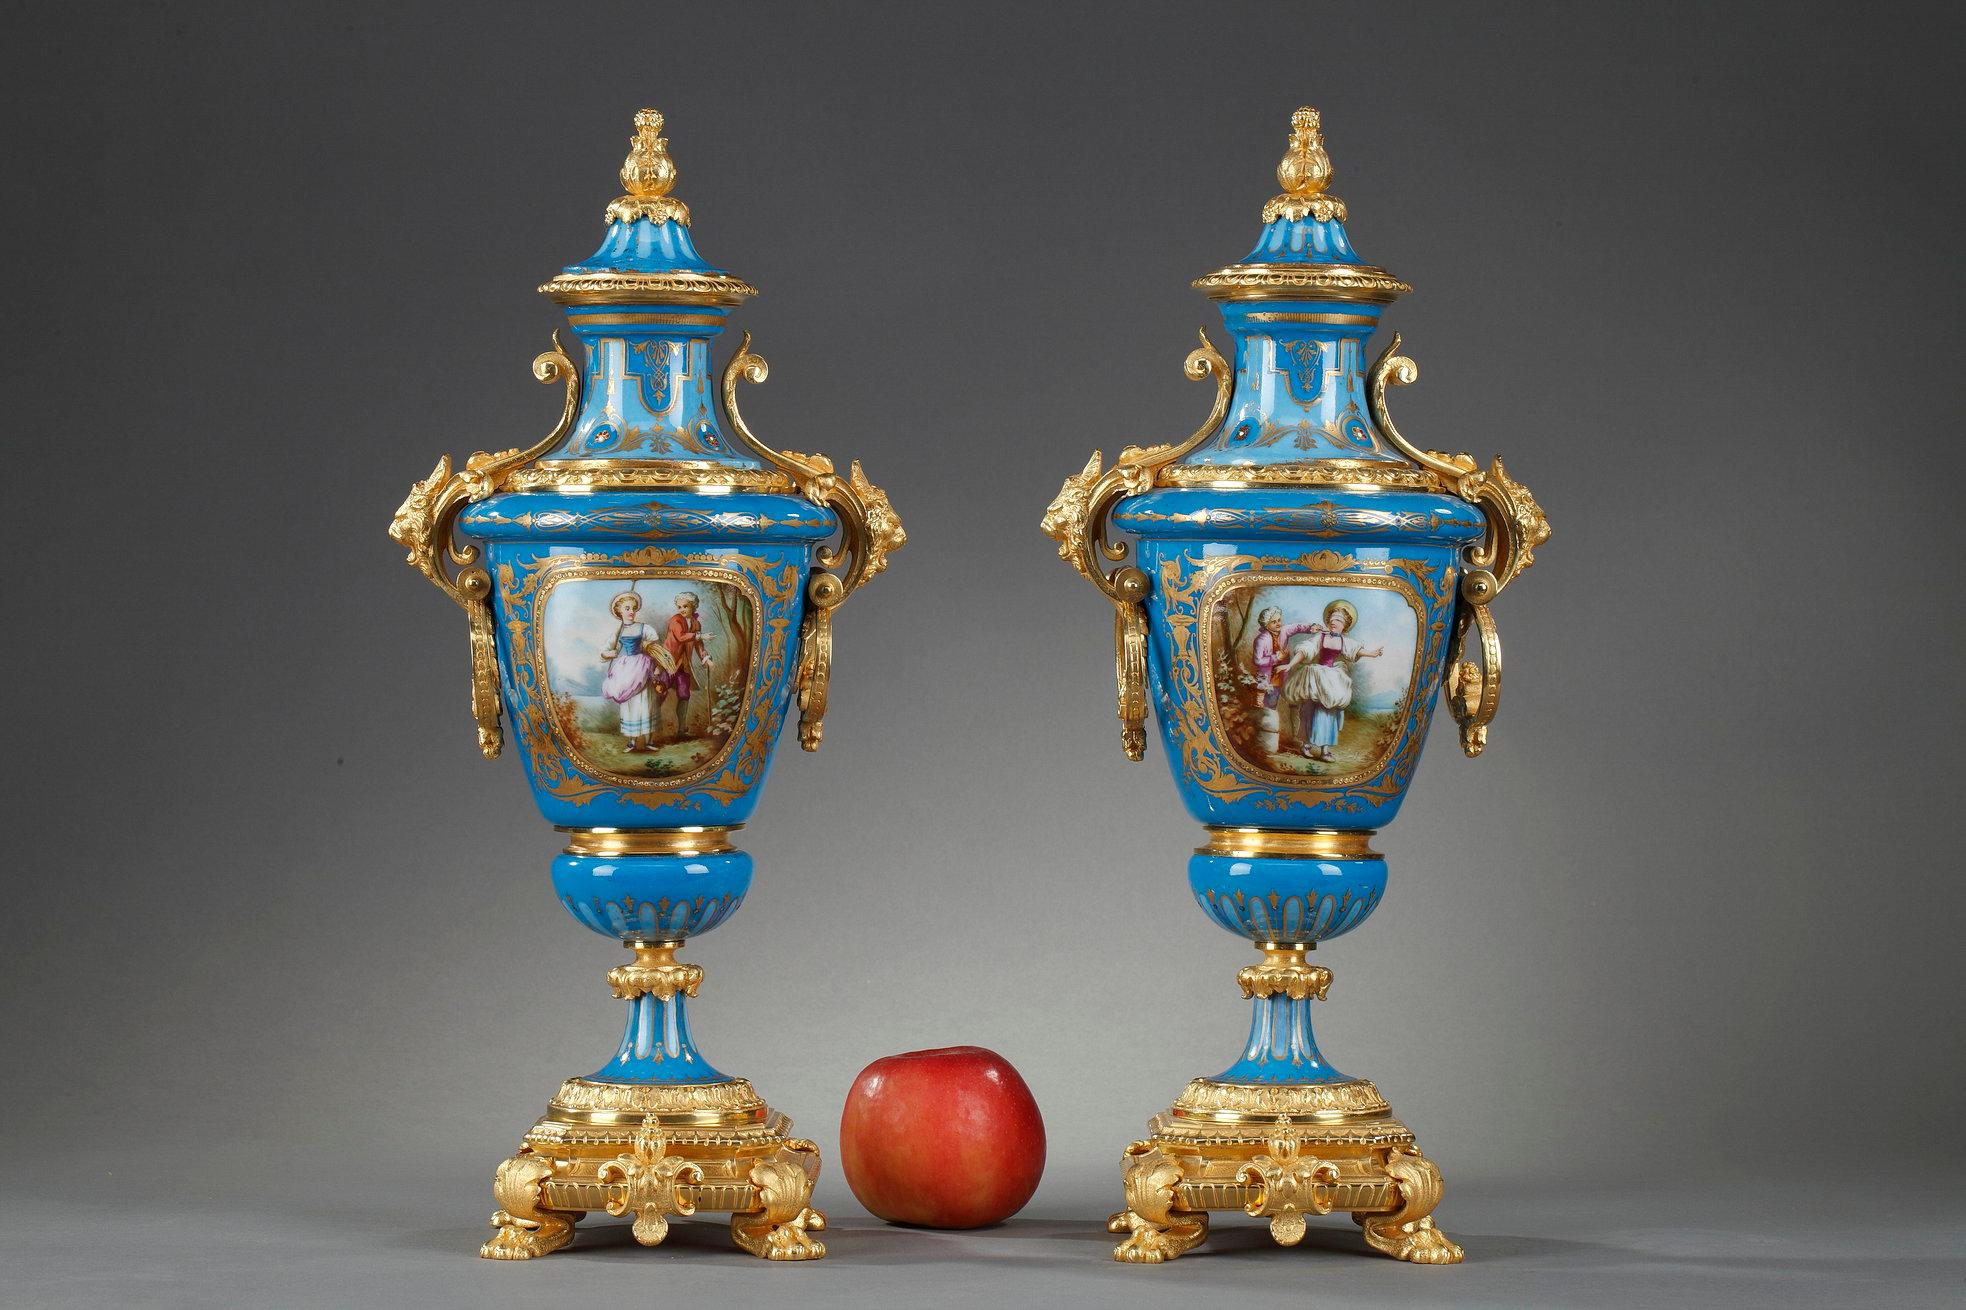 Paar überzogene polychrome Porzellanvasen im Stil von Sèvres mit vergoldeten Bronzebeschlägen. 

Die Basis steht auf vier Klauenfüßen und Kartuschen in Form von geschnittenem Leder, das mit Muscheln verziert ist. Die Griffe aus vergoldeter Bronze